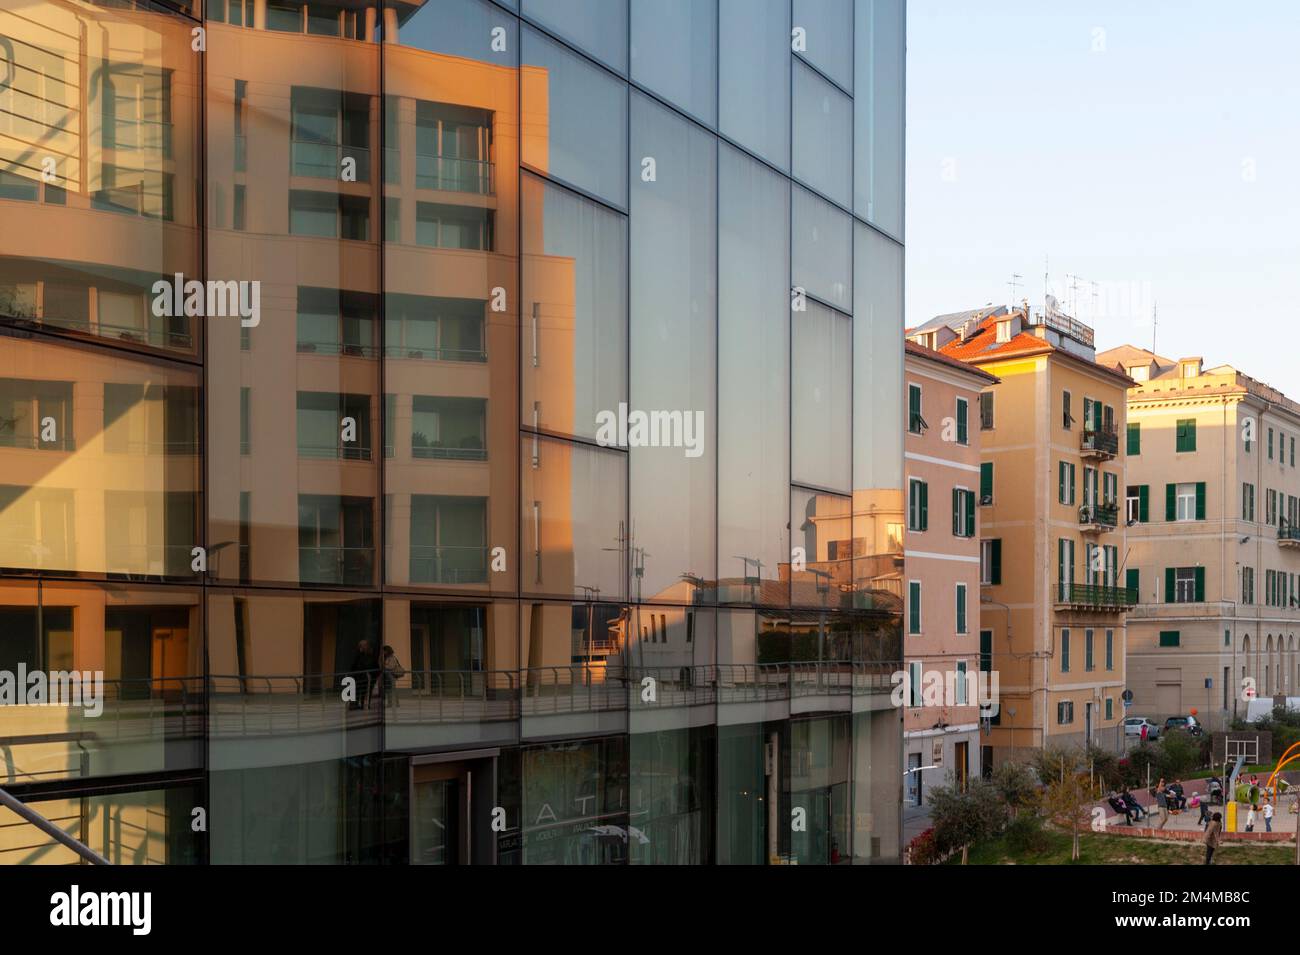 Italie, Savona. Panorama, vue sur la ville de Savona dans le quartier de Porto Nuovo. Bâtiment et architecture modernes. Banque D'Images